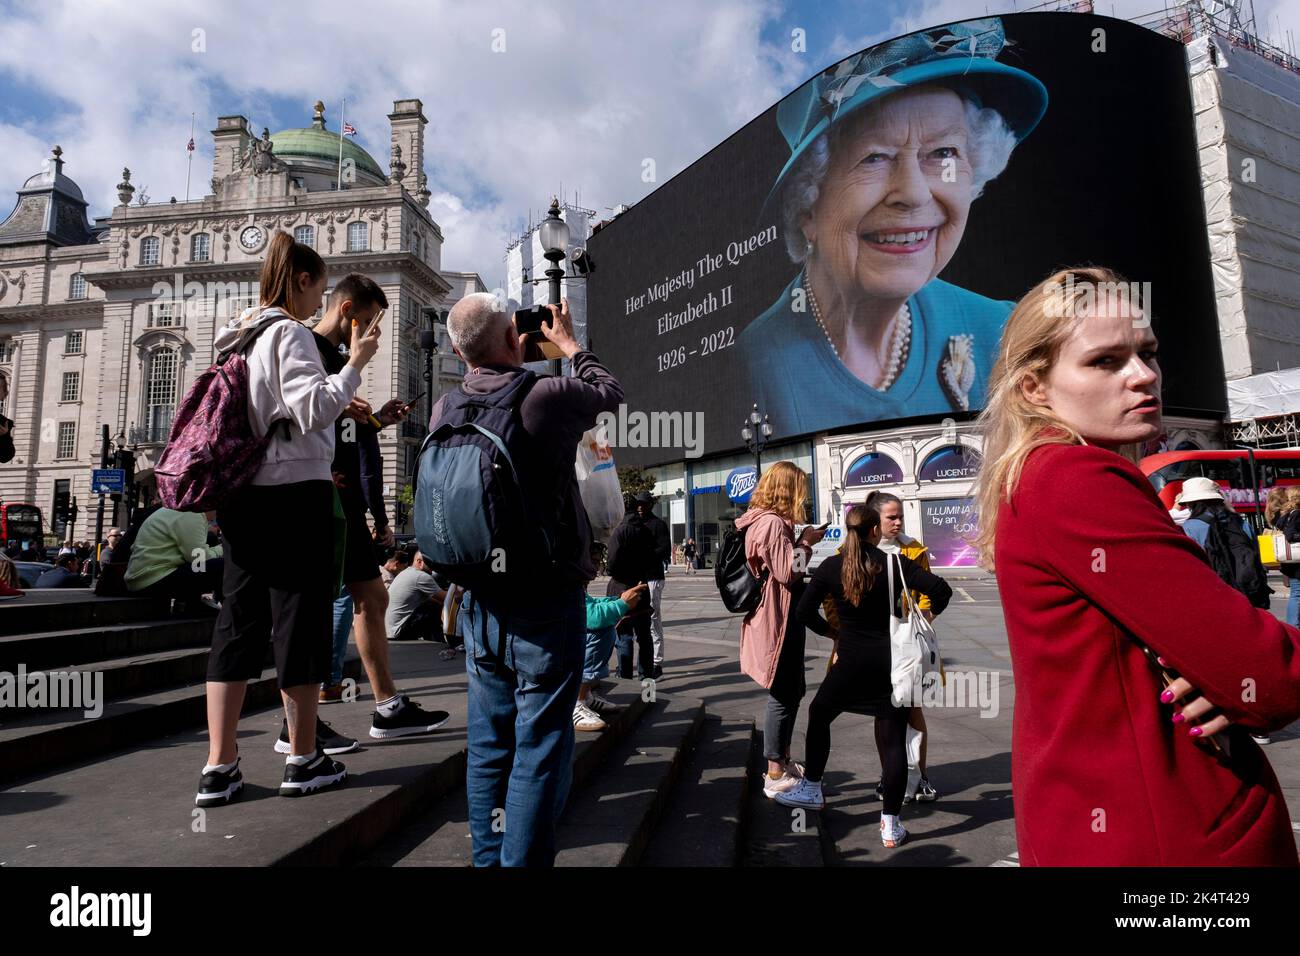 Con la pubblicità sospesa, i visitatori e i turisti a Piccadilly Circus interagiscono sotto un'immagine a colori della Regina Elisabetta II che è in mostra sugli schermi pubblicitari su larga scala il giorno successivo alla sua morte, il 9th settembre 2022 a Londra, Regno Unito. La regina, che aveva 96 anni, regnò come monarca del Regno Unito e del Commonwealth per 70 anni. Foto Stock